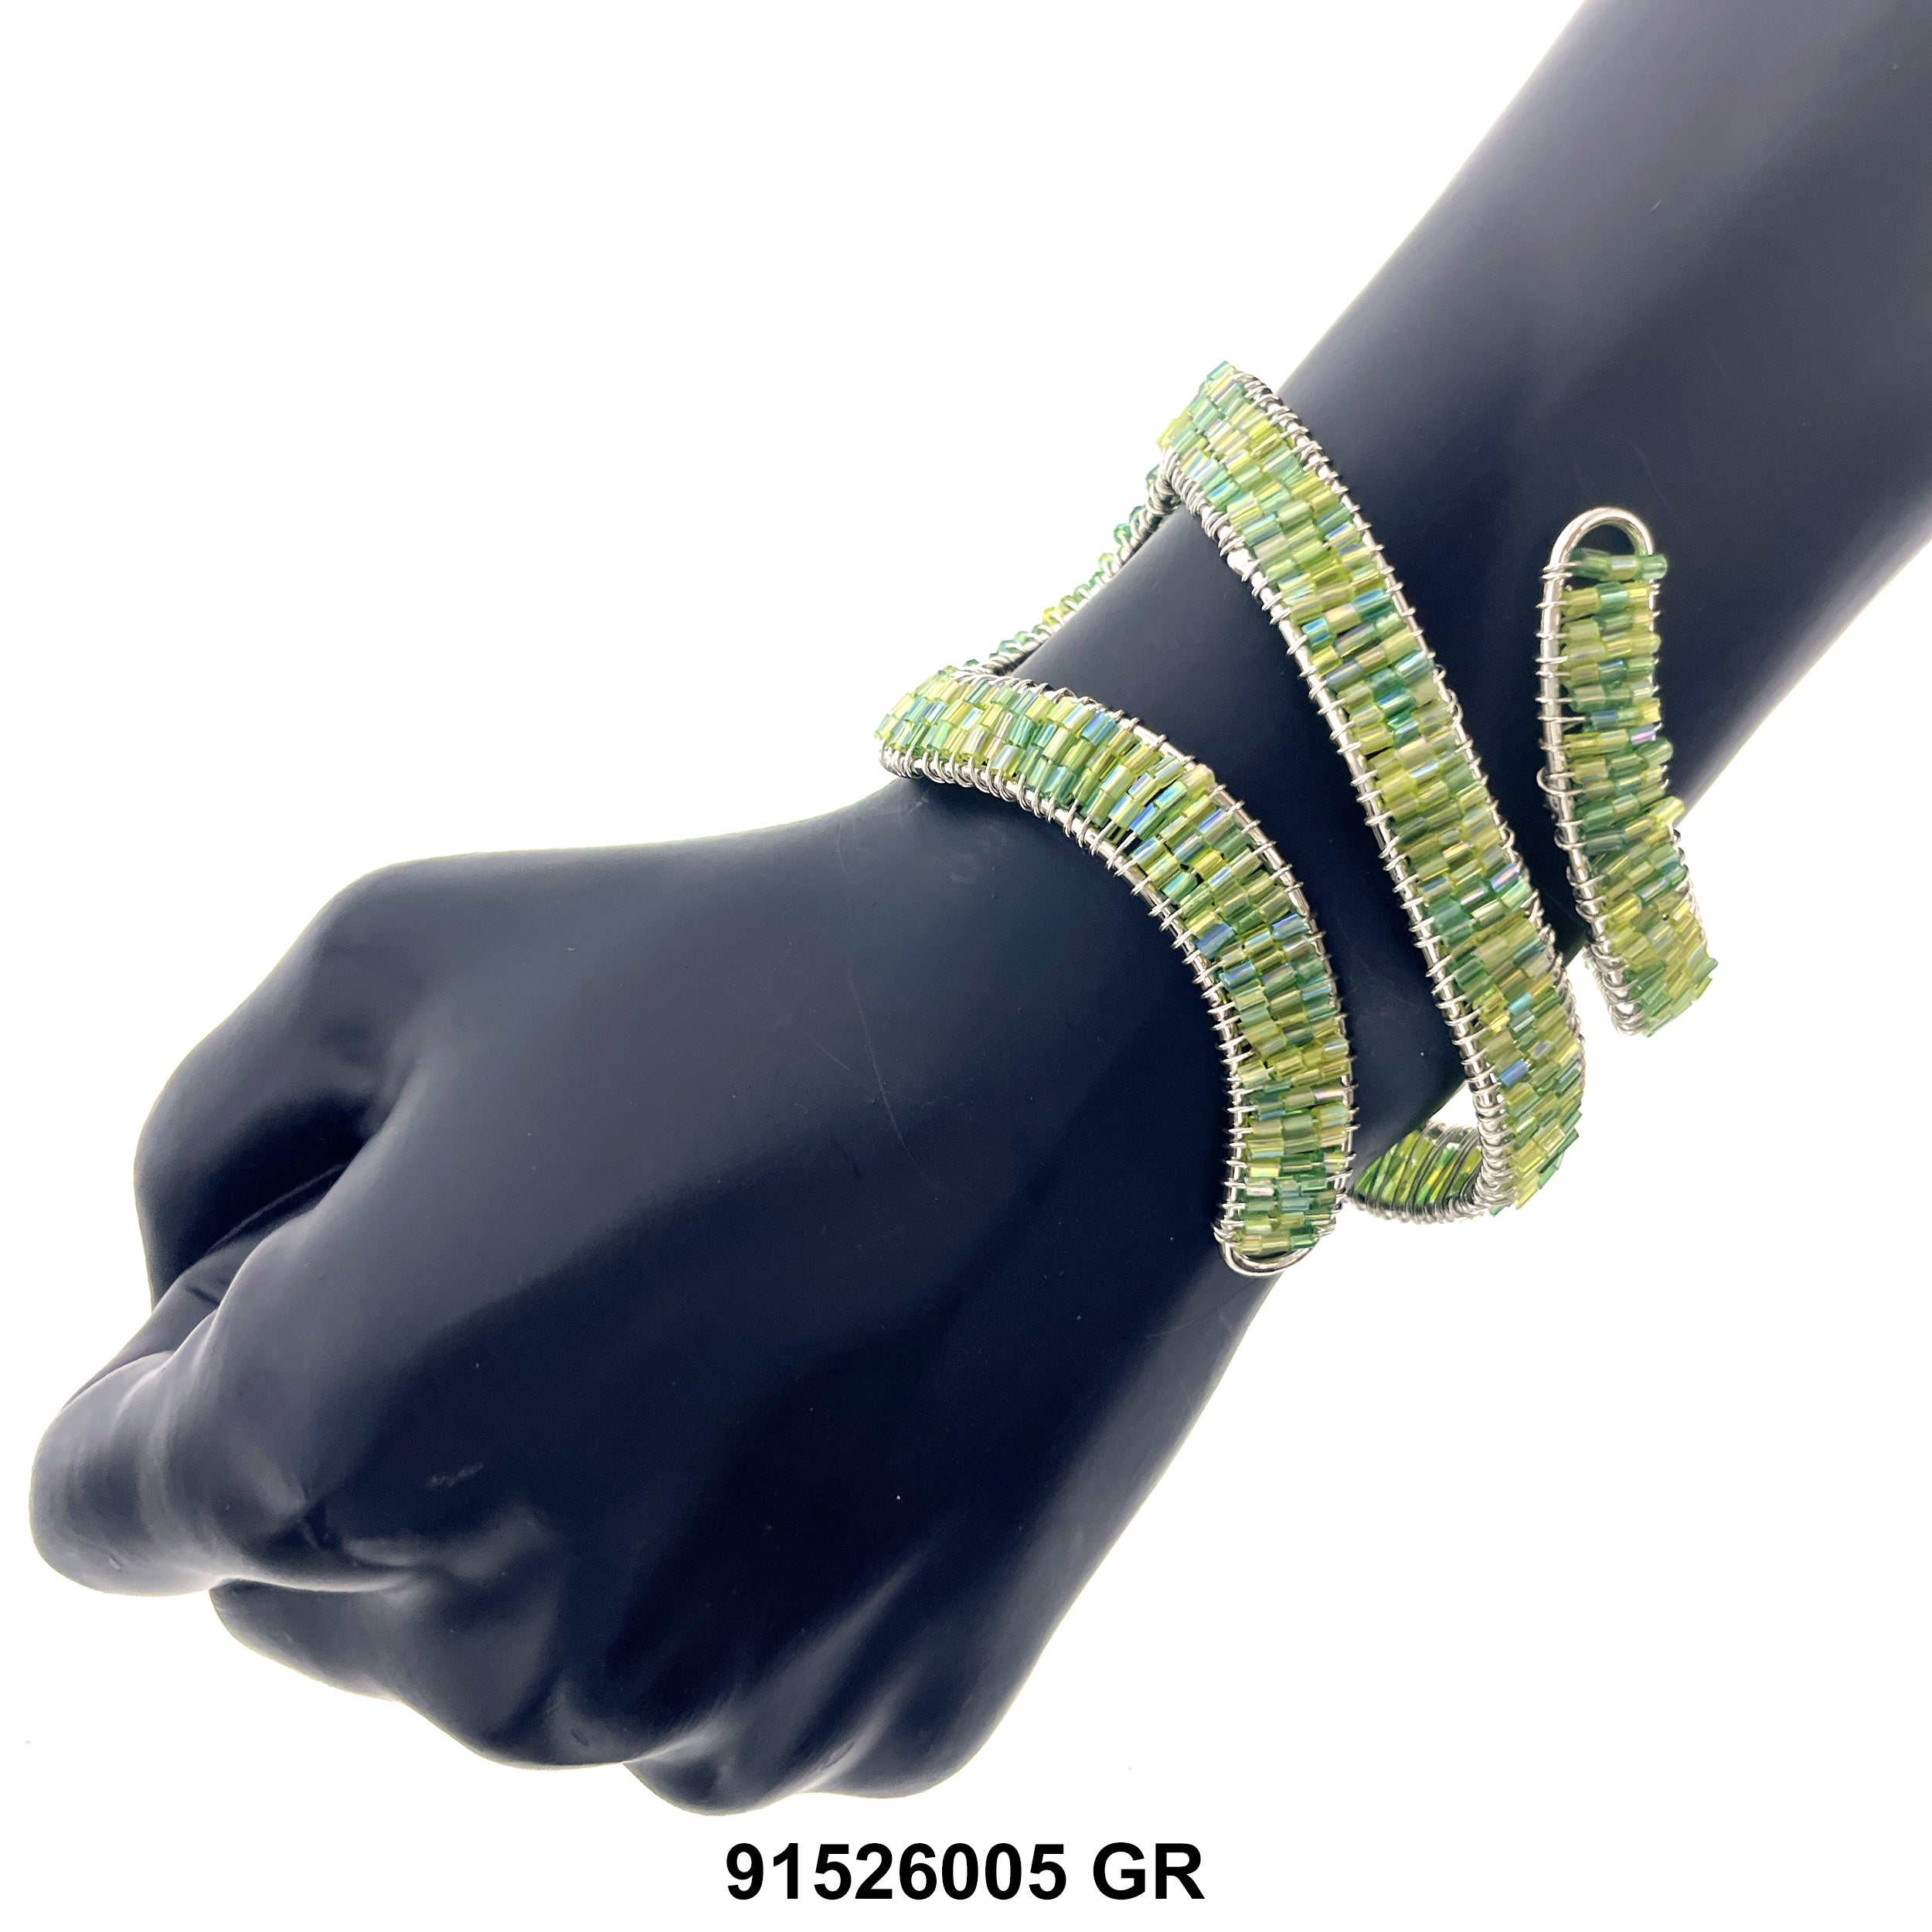 Cuff Bangle Bracelet 91526005 GR